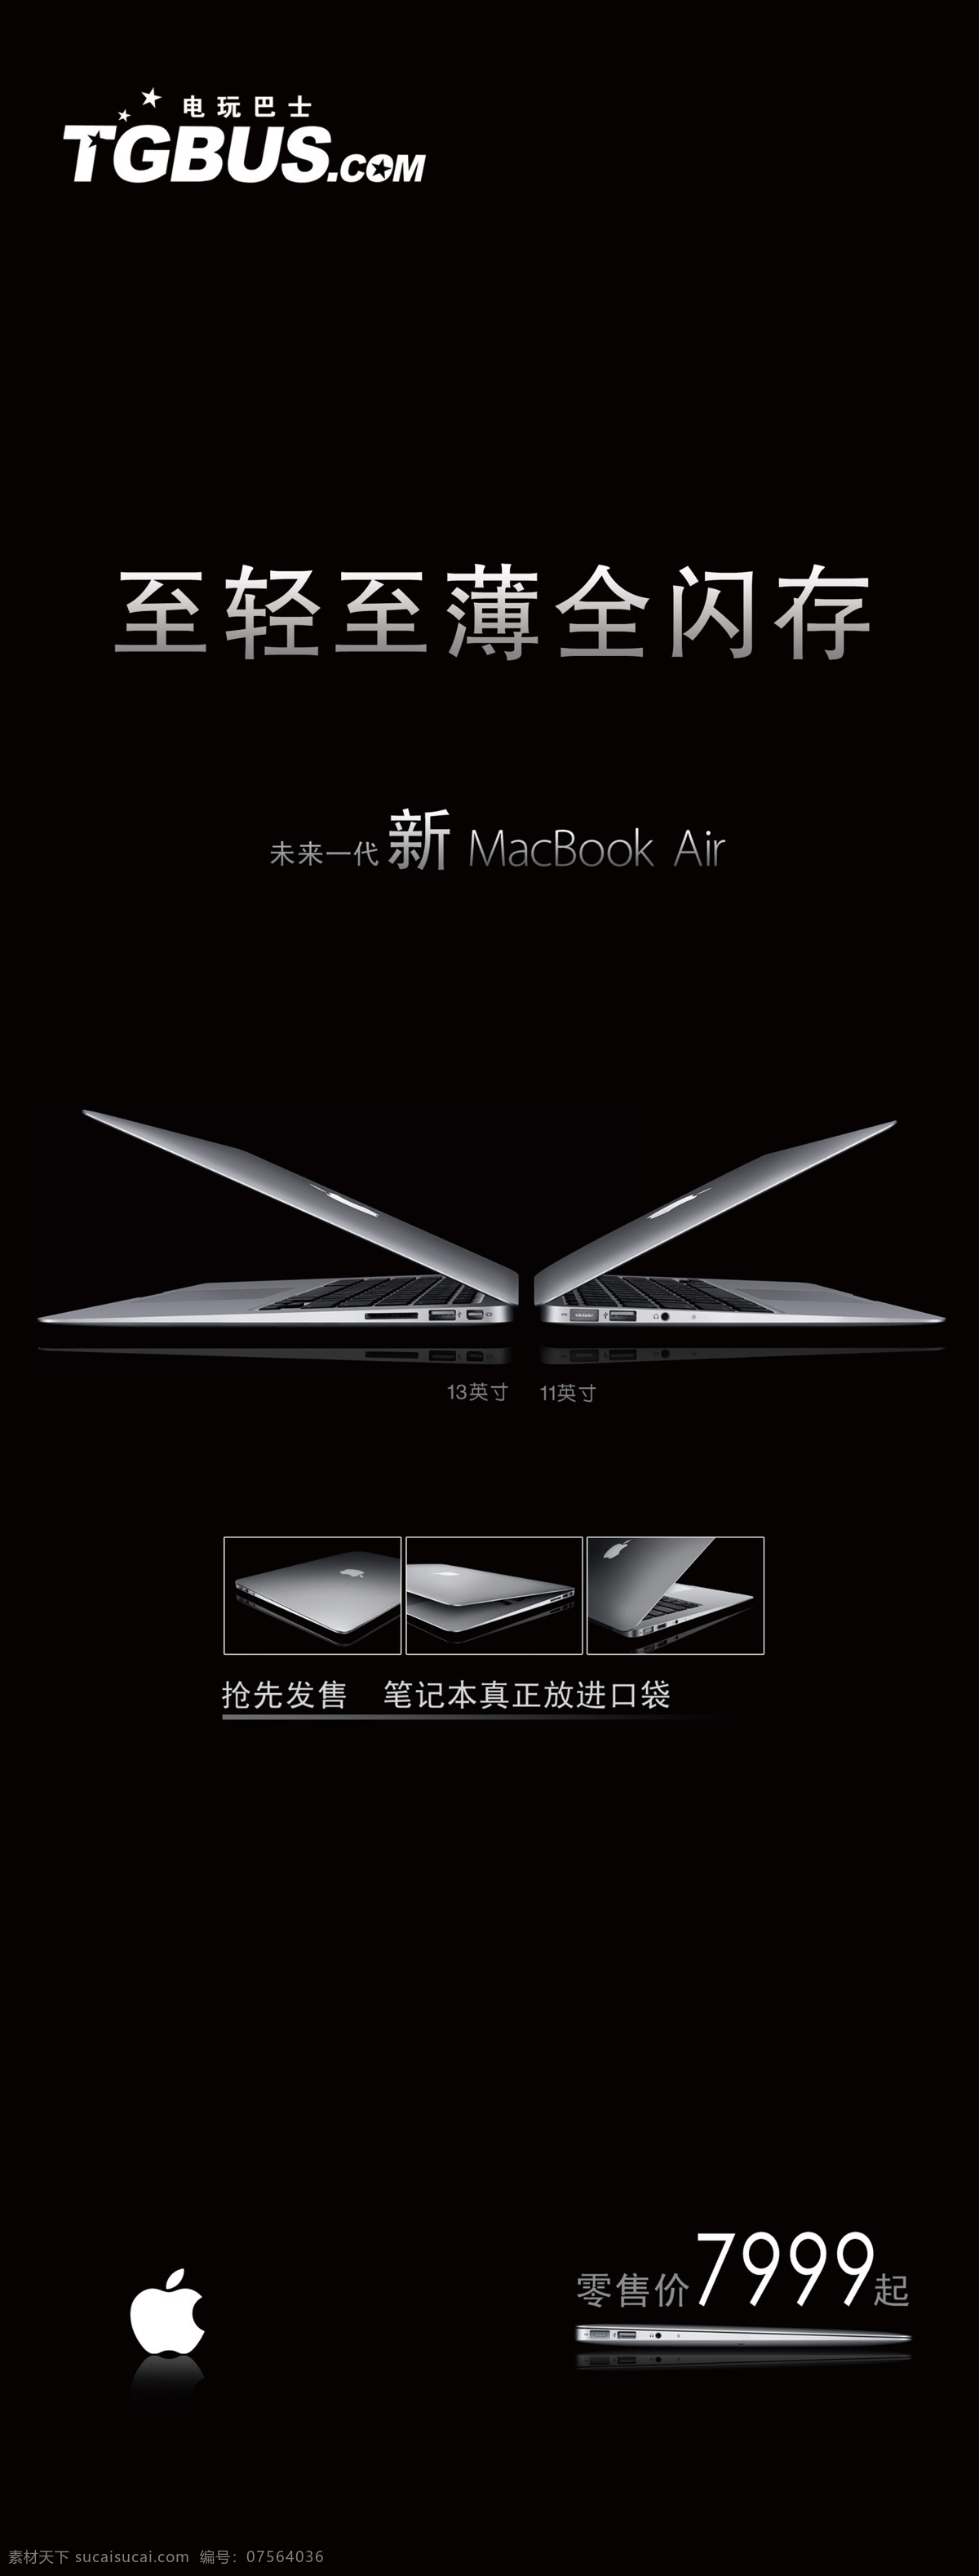 apple x展架 笔记本 电脑 广告设计模板 苹果 其他模版 数码 x 展架 超薄 易拉宝 分层 作品 源文件 矢量图 现代科技